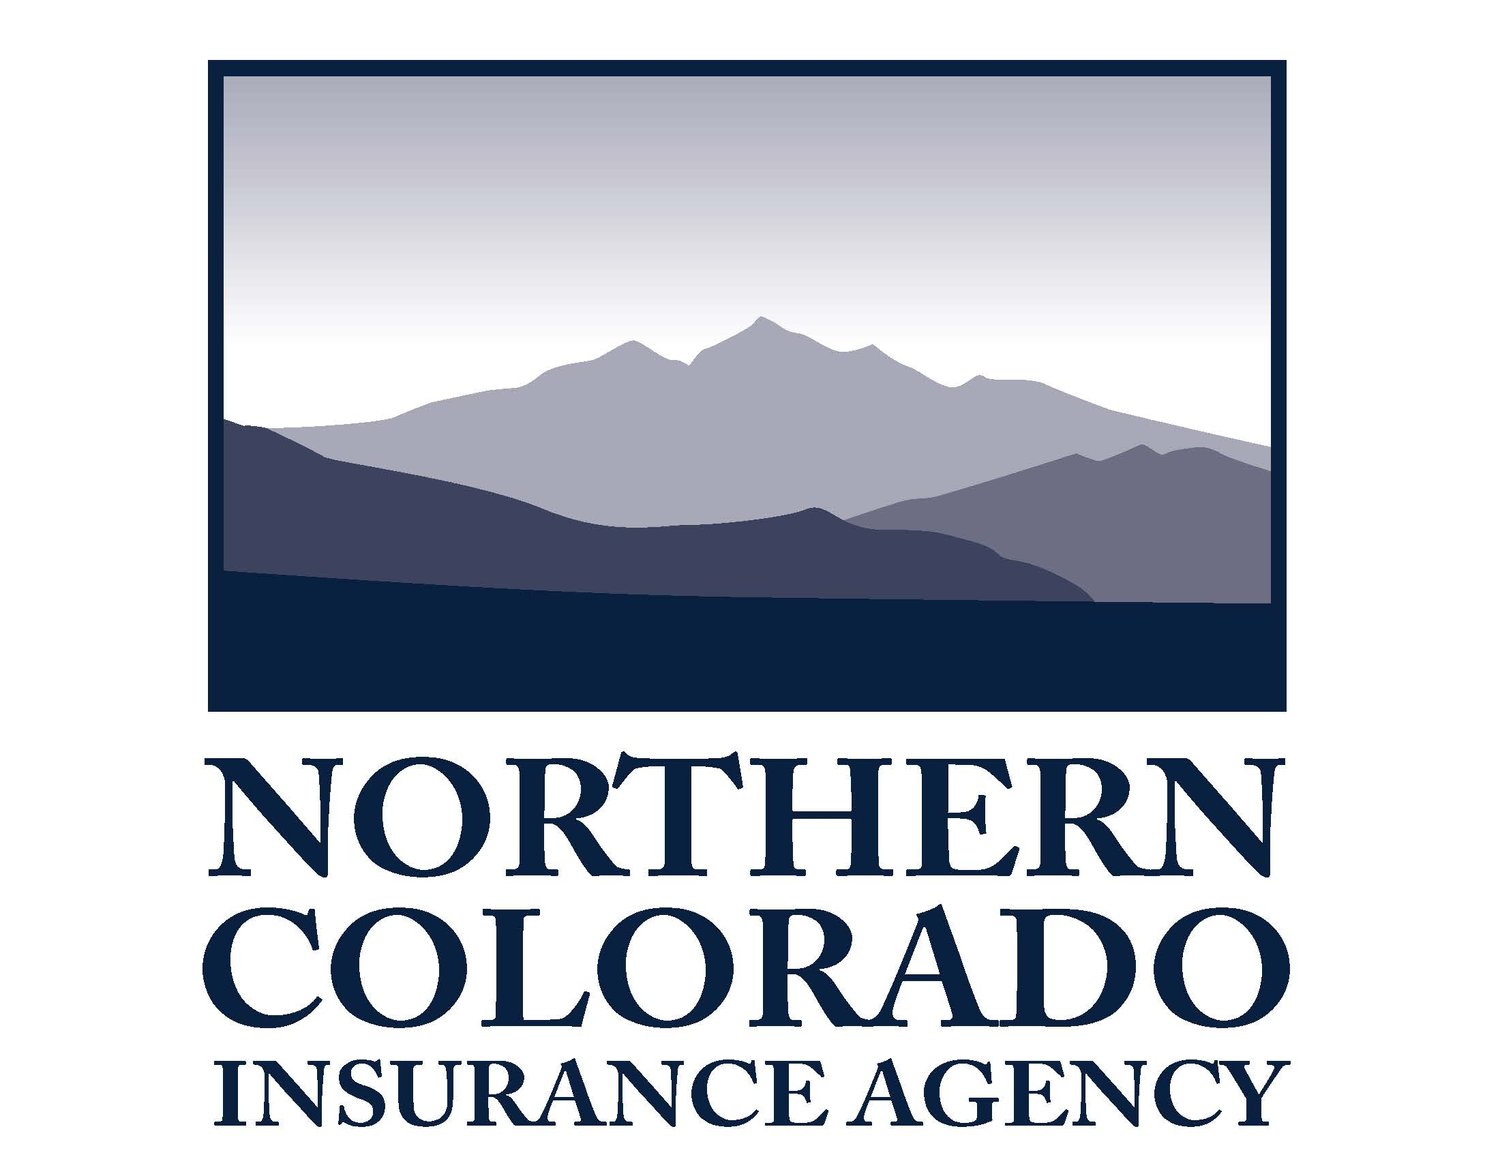 Northern Colorado Insurance Agency